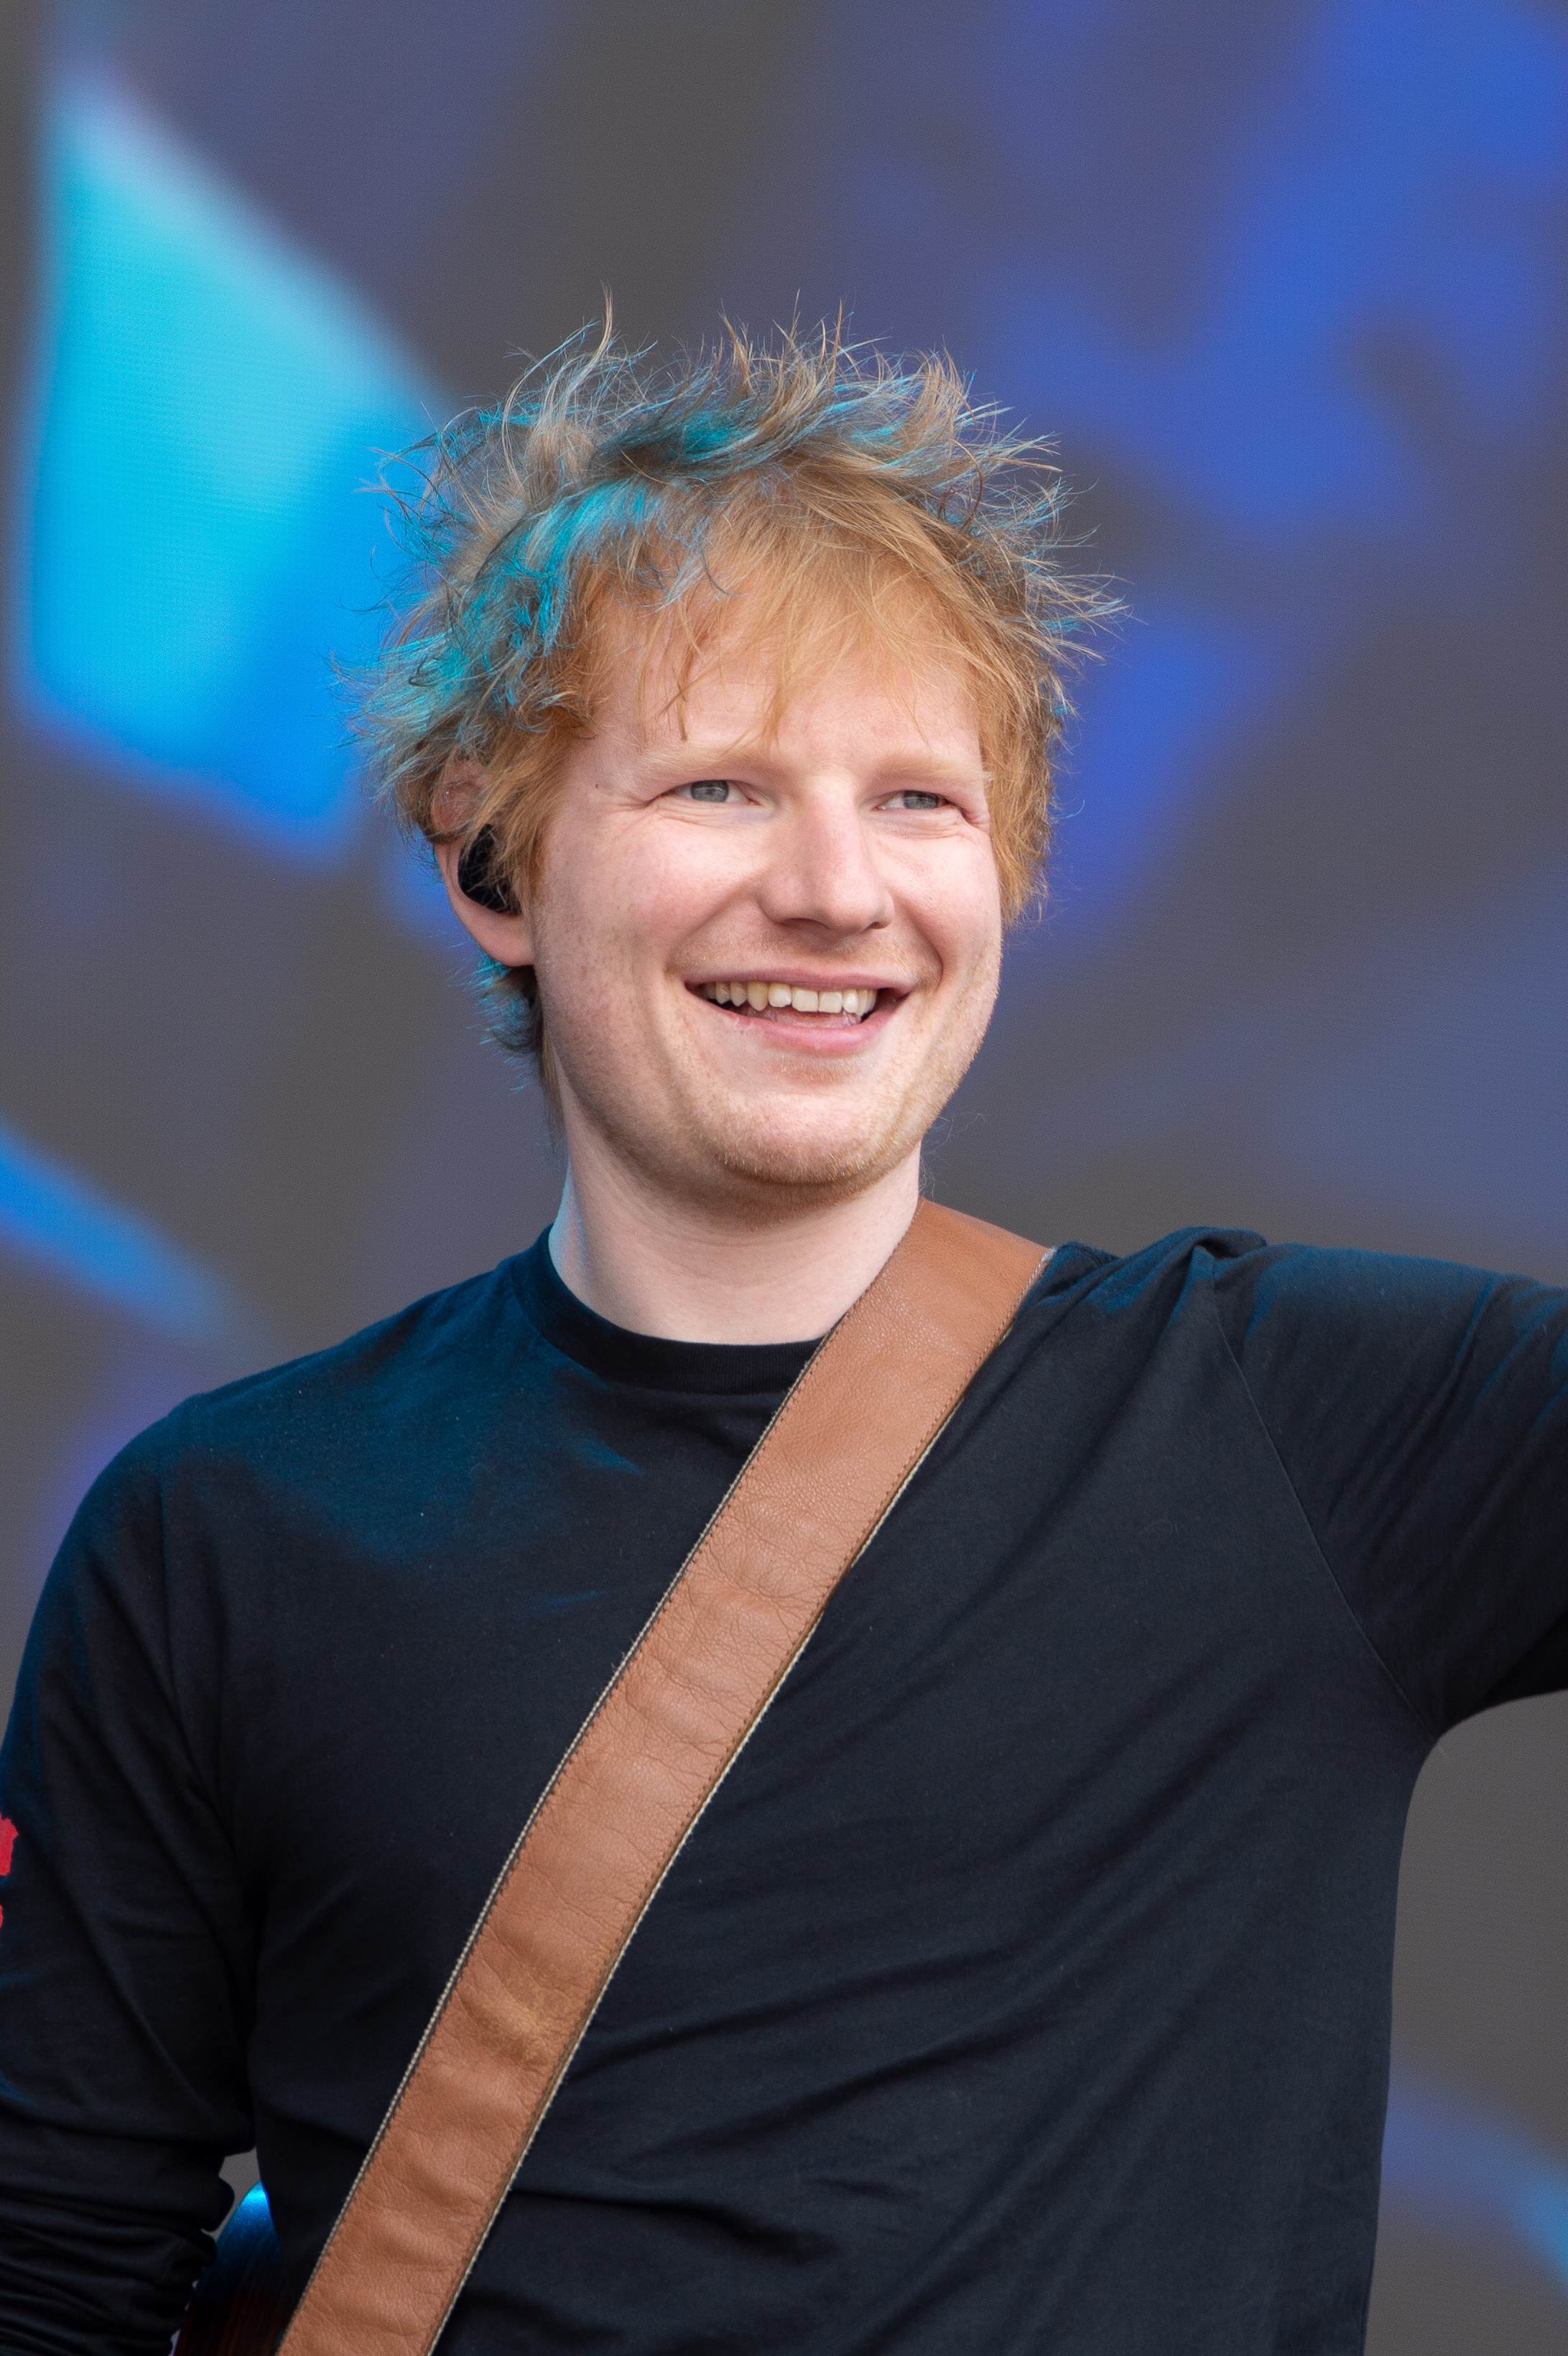 Ed Sheeran performing at War Memorial Park in England